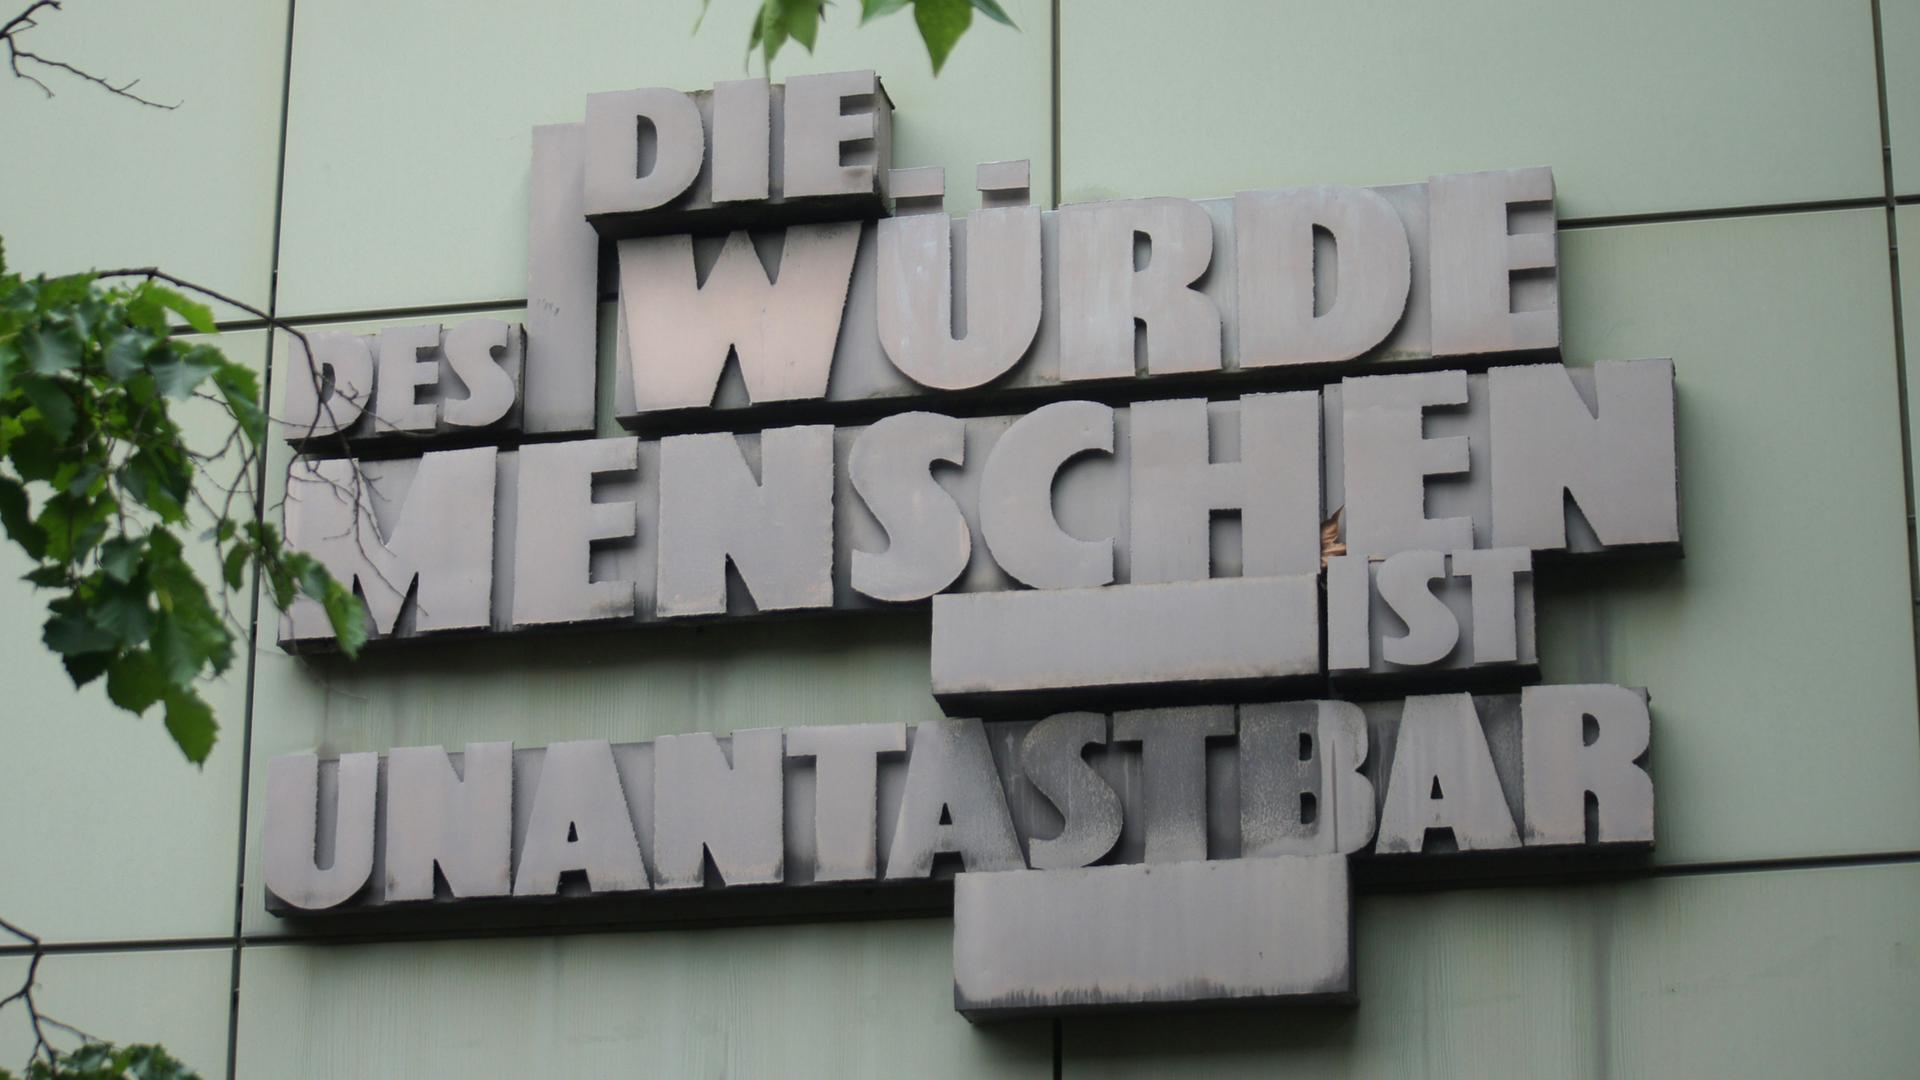 Artikel 1 des Grundgesetzes der Bundesrepublik Deutschland, an einer Wand eines Justizgebäudes in Frankfurt.